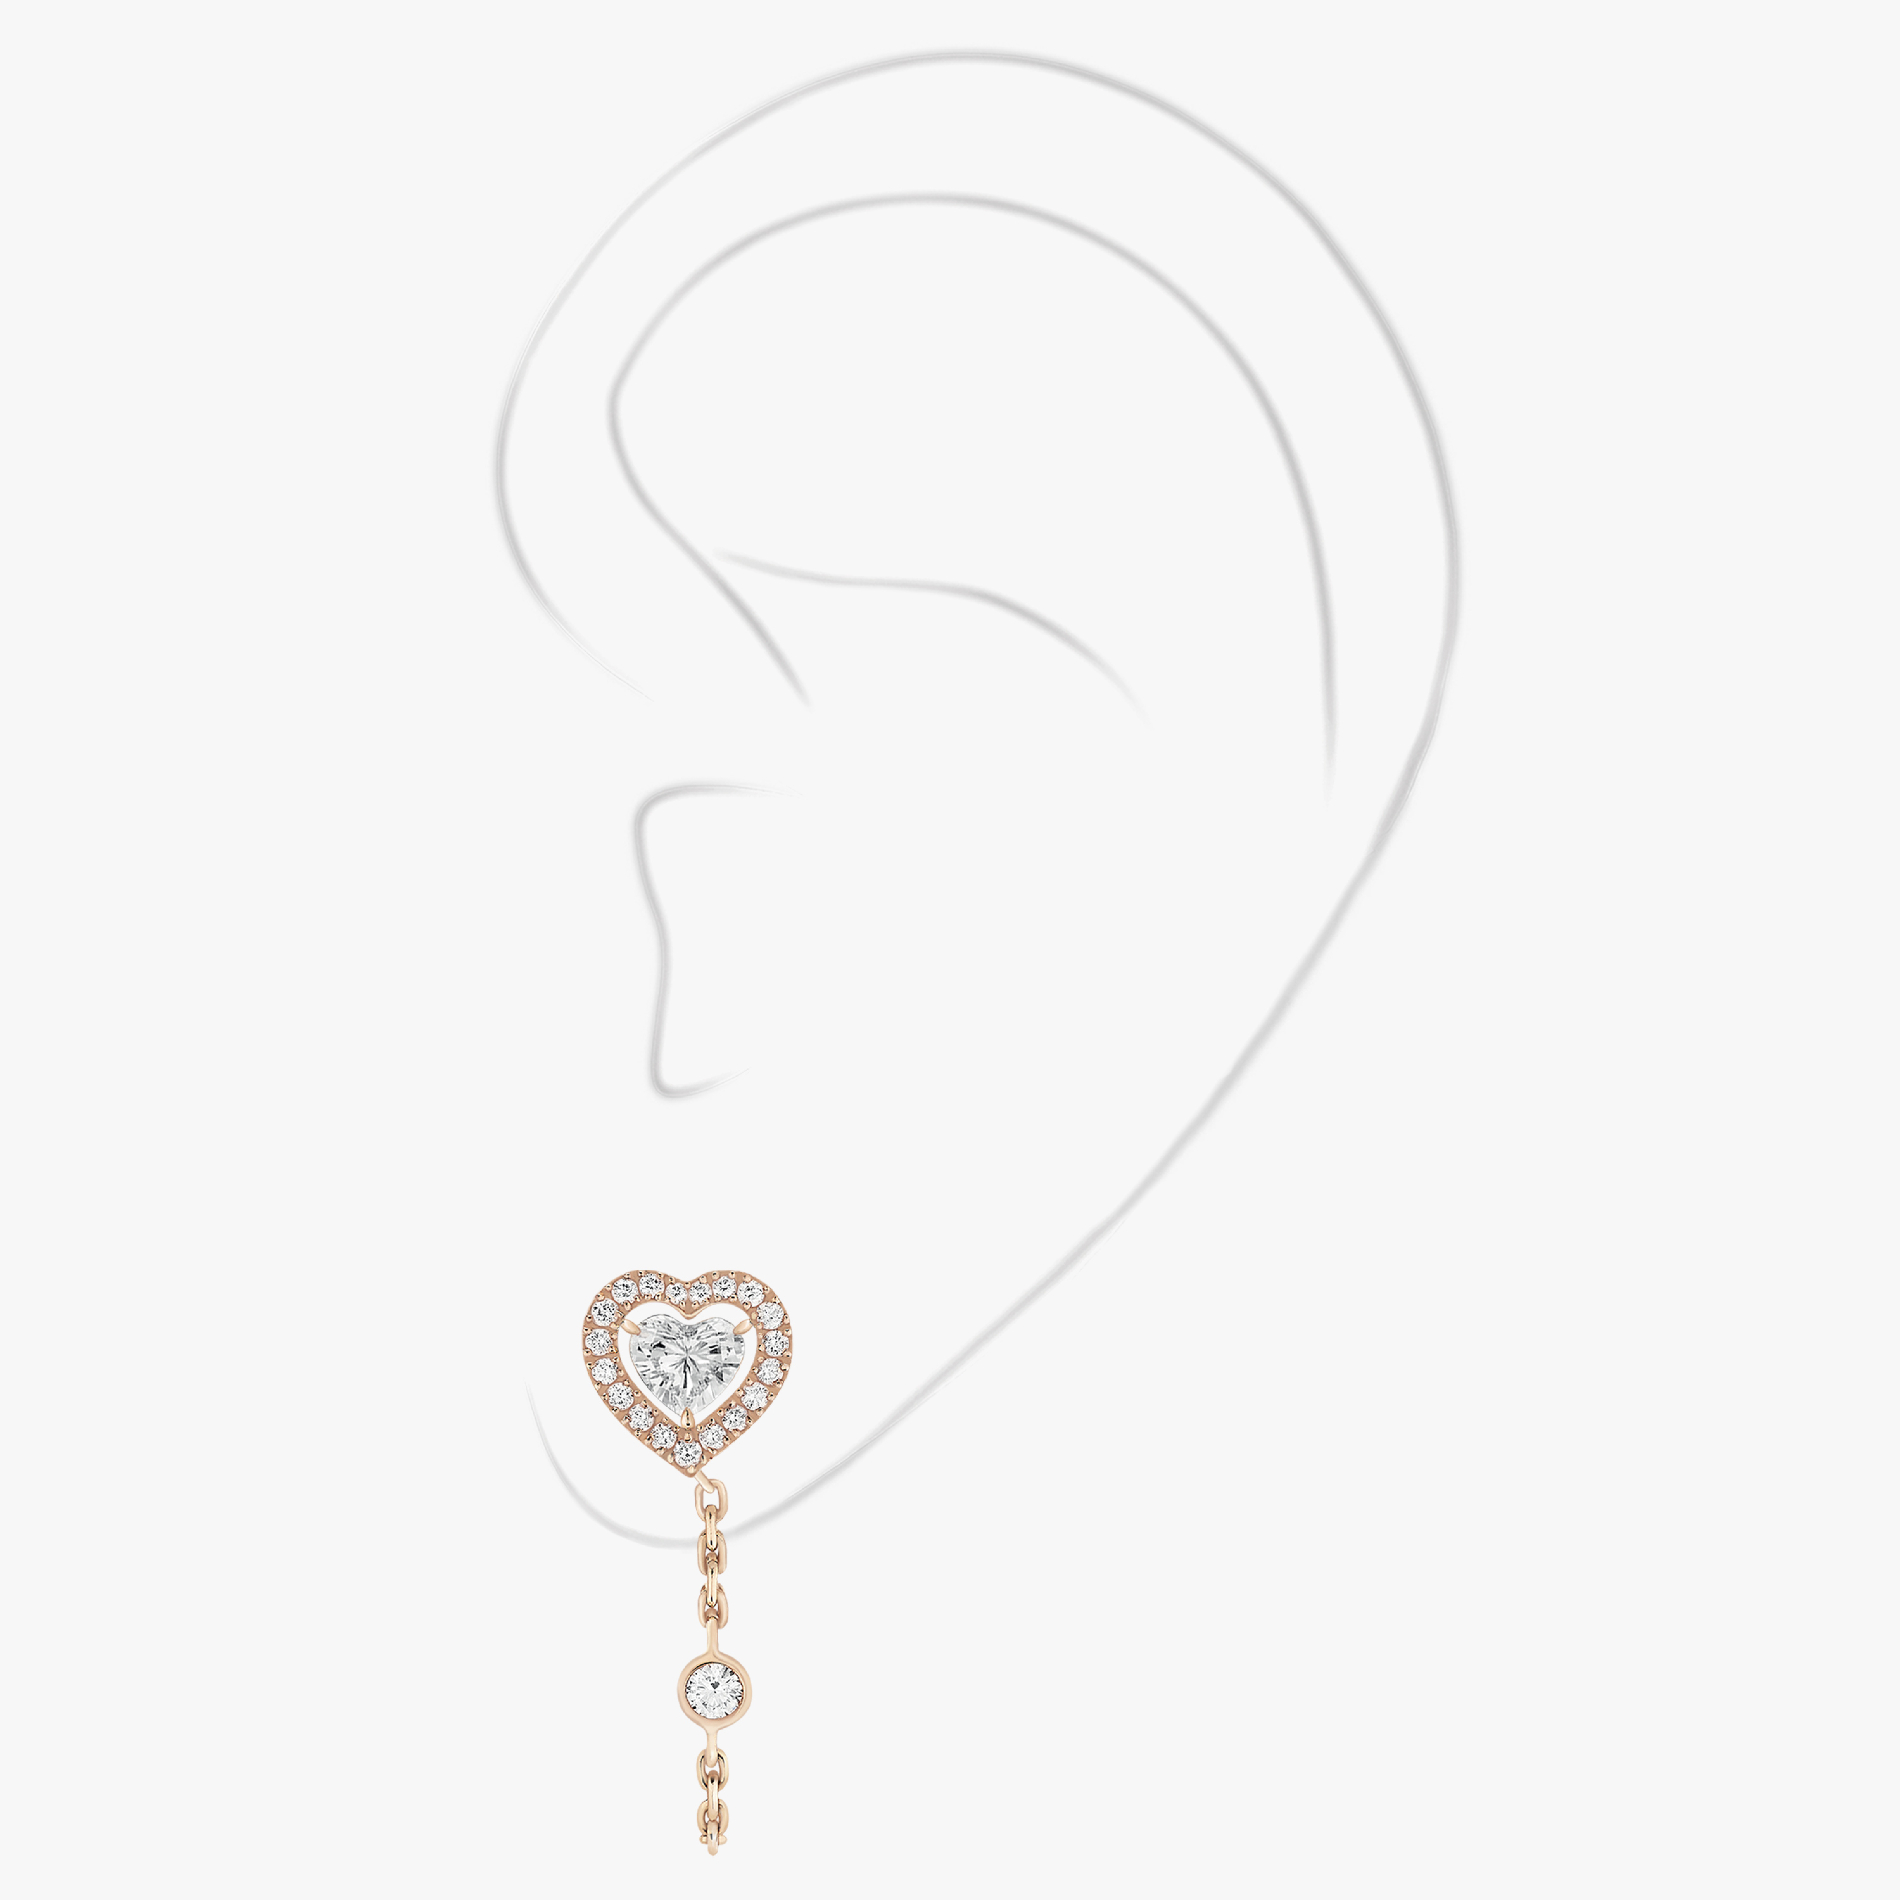 Pendiente Mujer Oro rosa Diamante Pendiente individual de cadena con diamante de corazón de 0,15 ct Joy 11557-PG